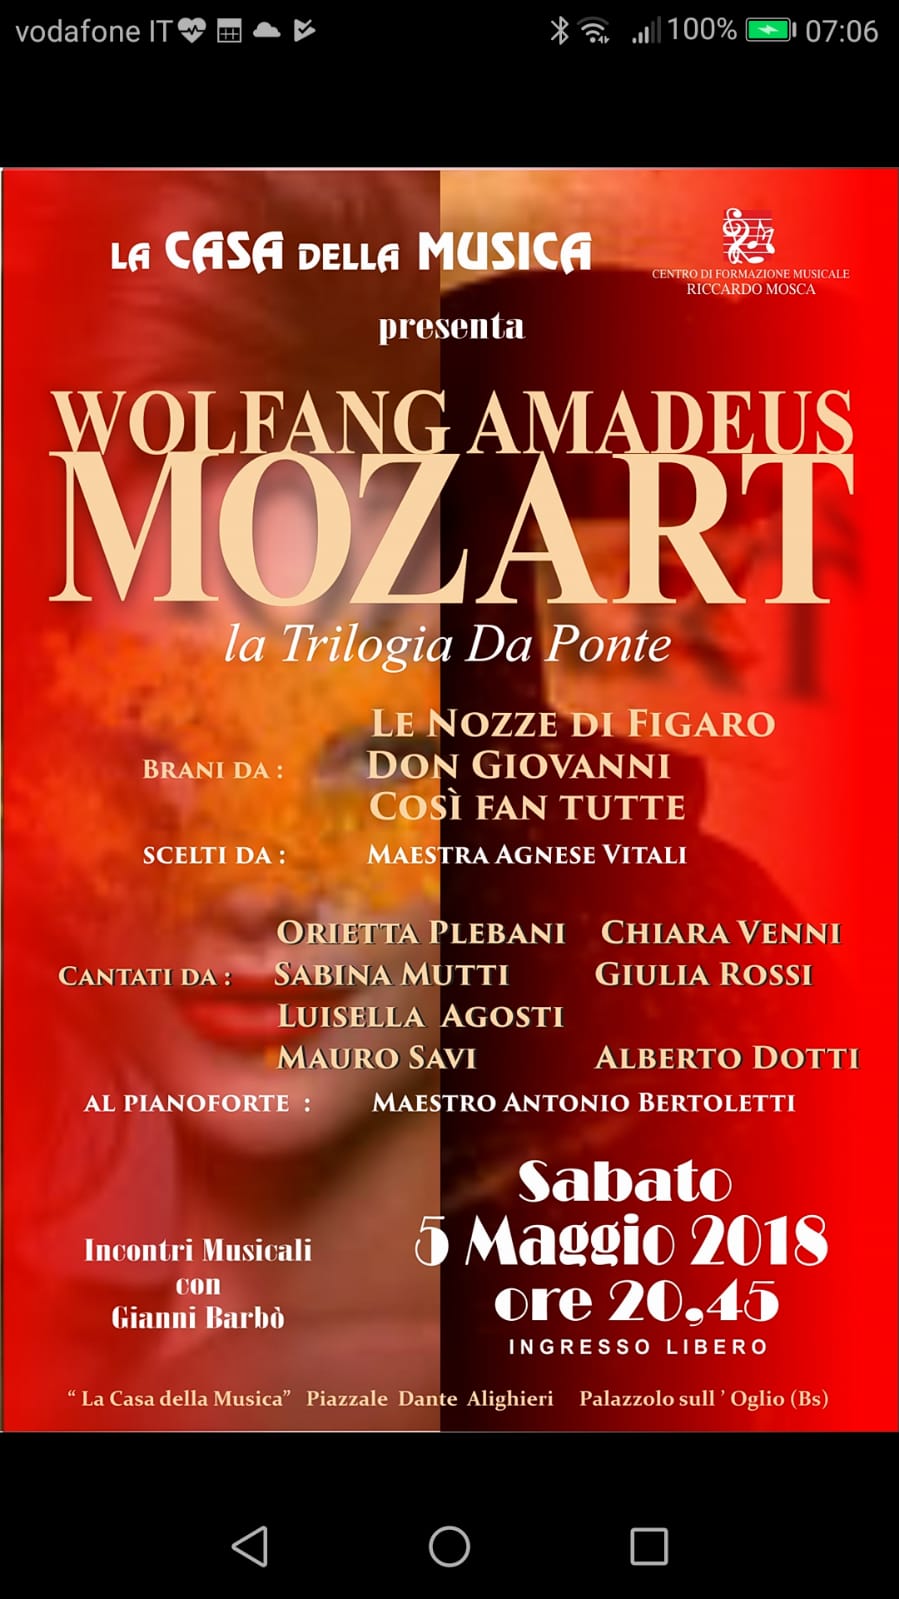 05/05 – Mozart (Incontri Musicali con Gianni Barbò)